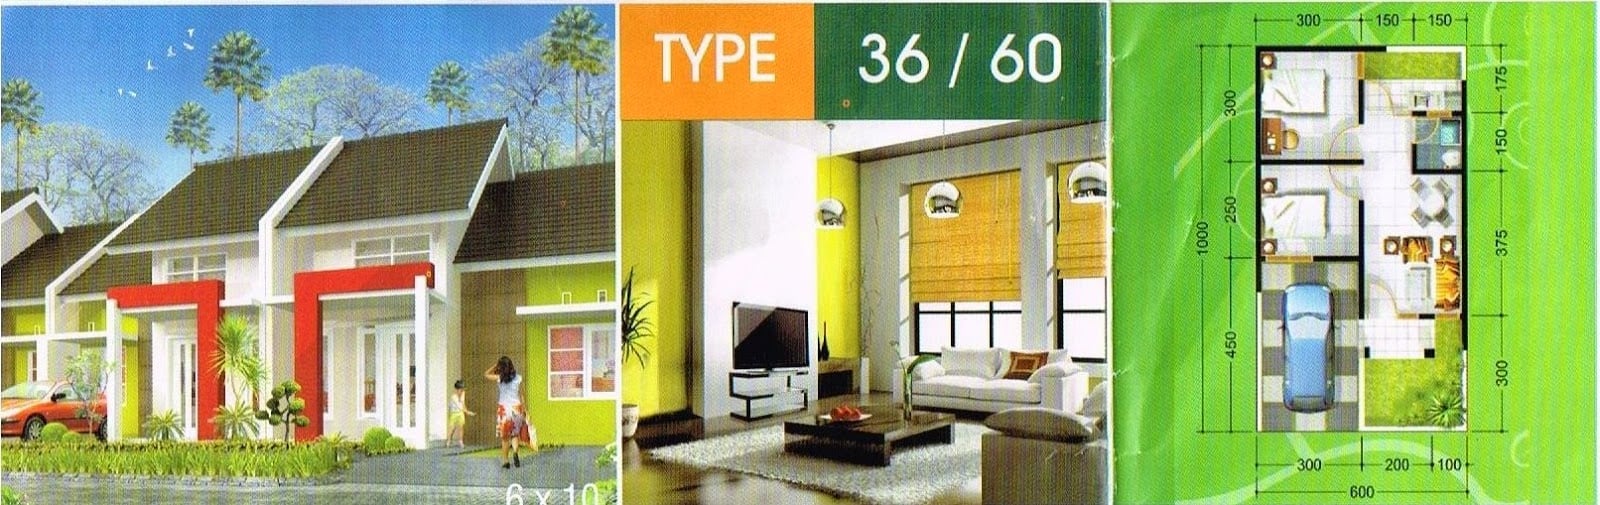 Teratas Desain Interior Rumah Luas Tanah 60 64 Di Desain Interior Untuk Renovasi Rumah dengan Desain Interior Rumah Luas Tanah 60